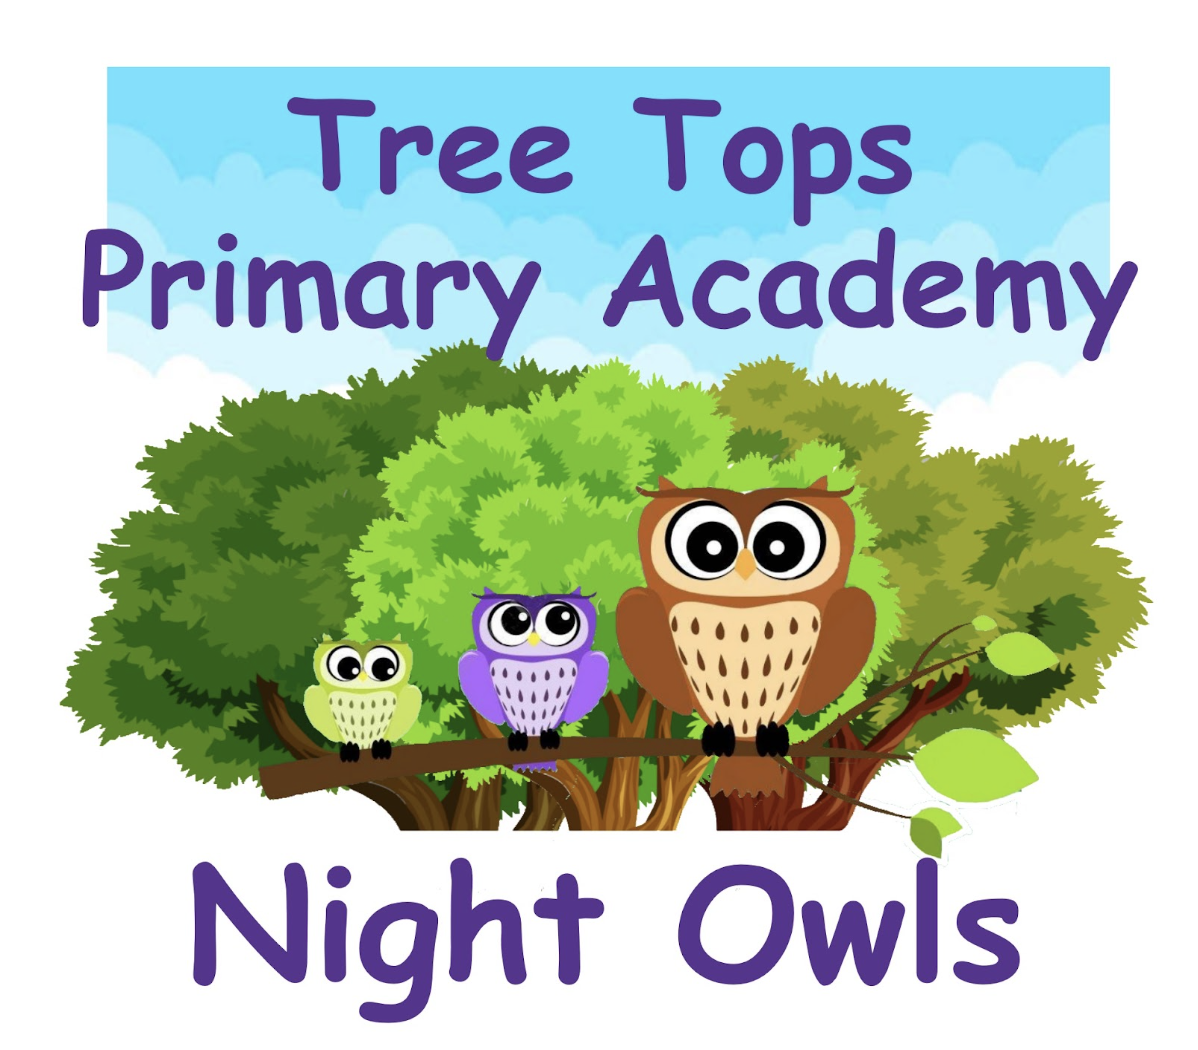 Night owls club logo